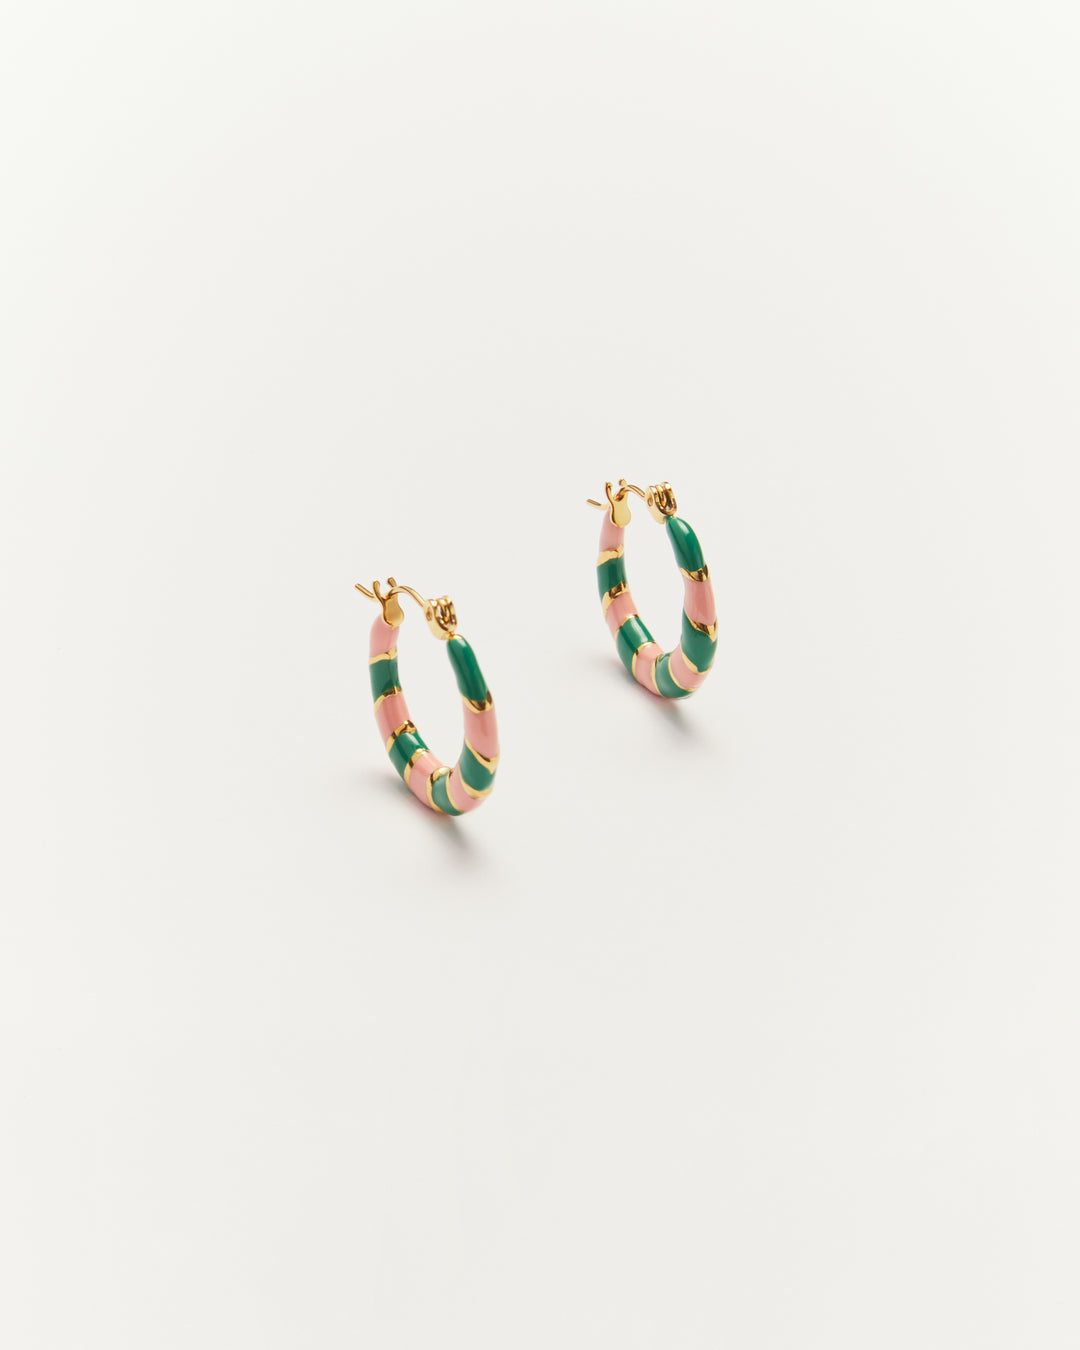 Twiggy - Earrings Green & Rosy - Palas